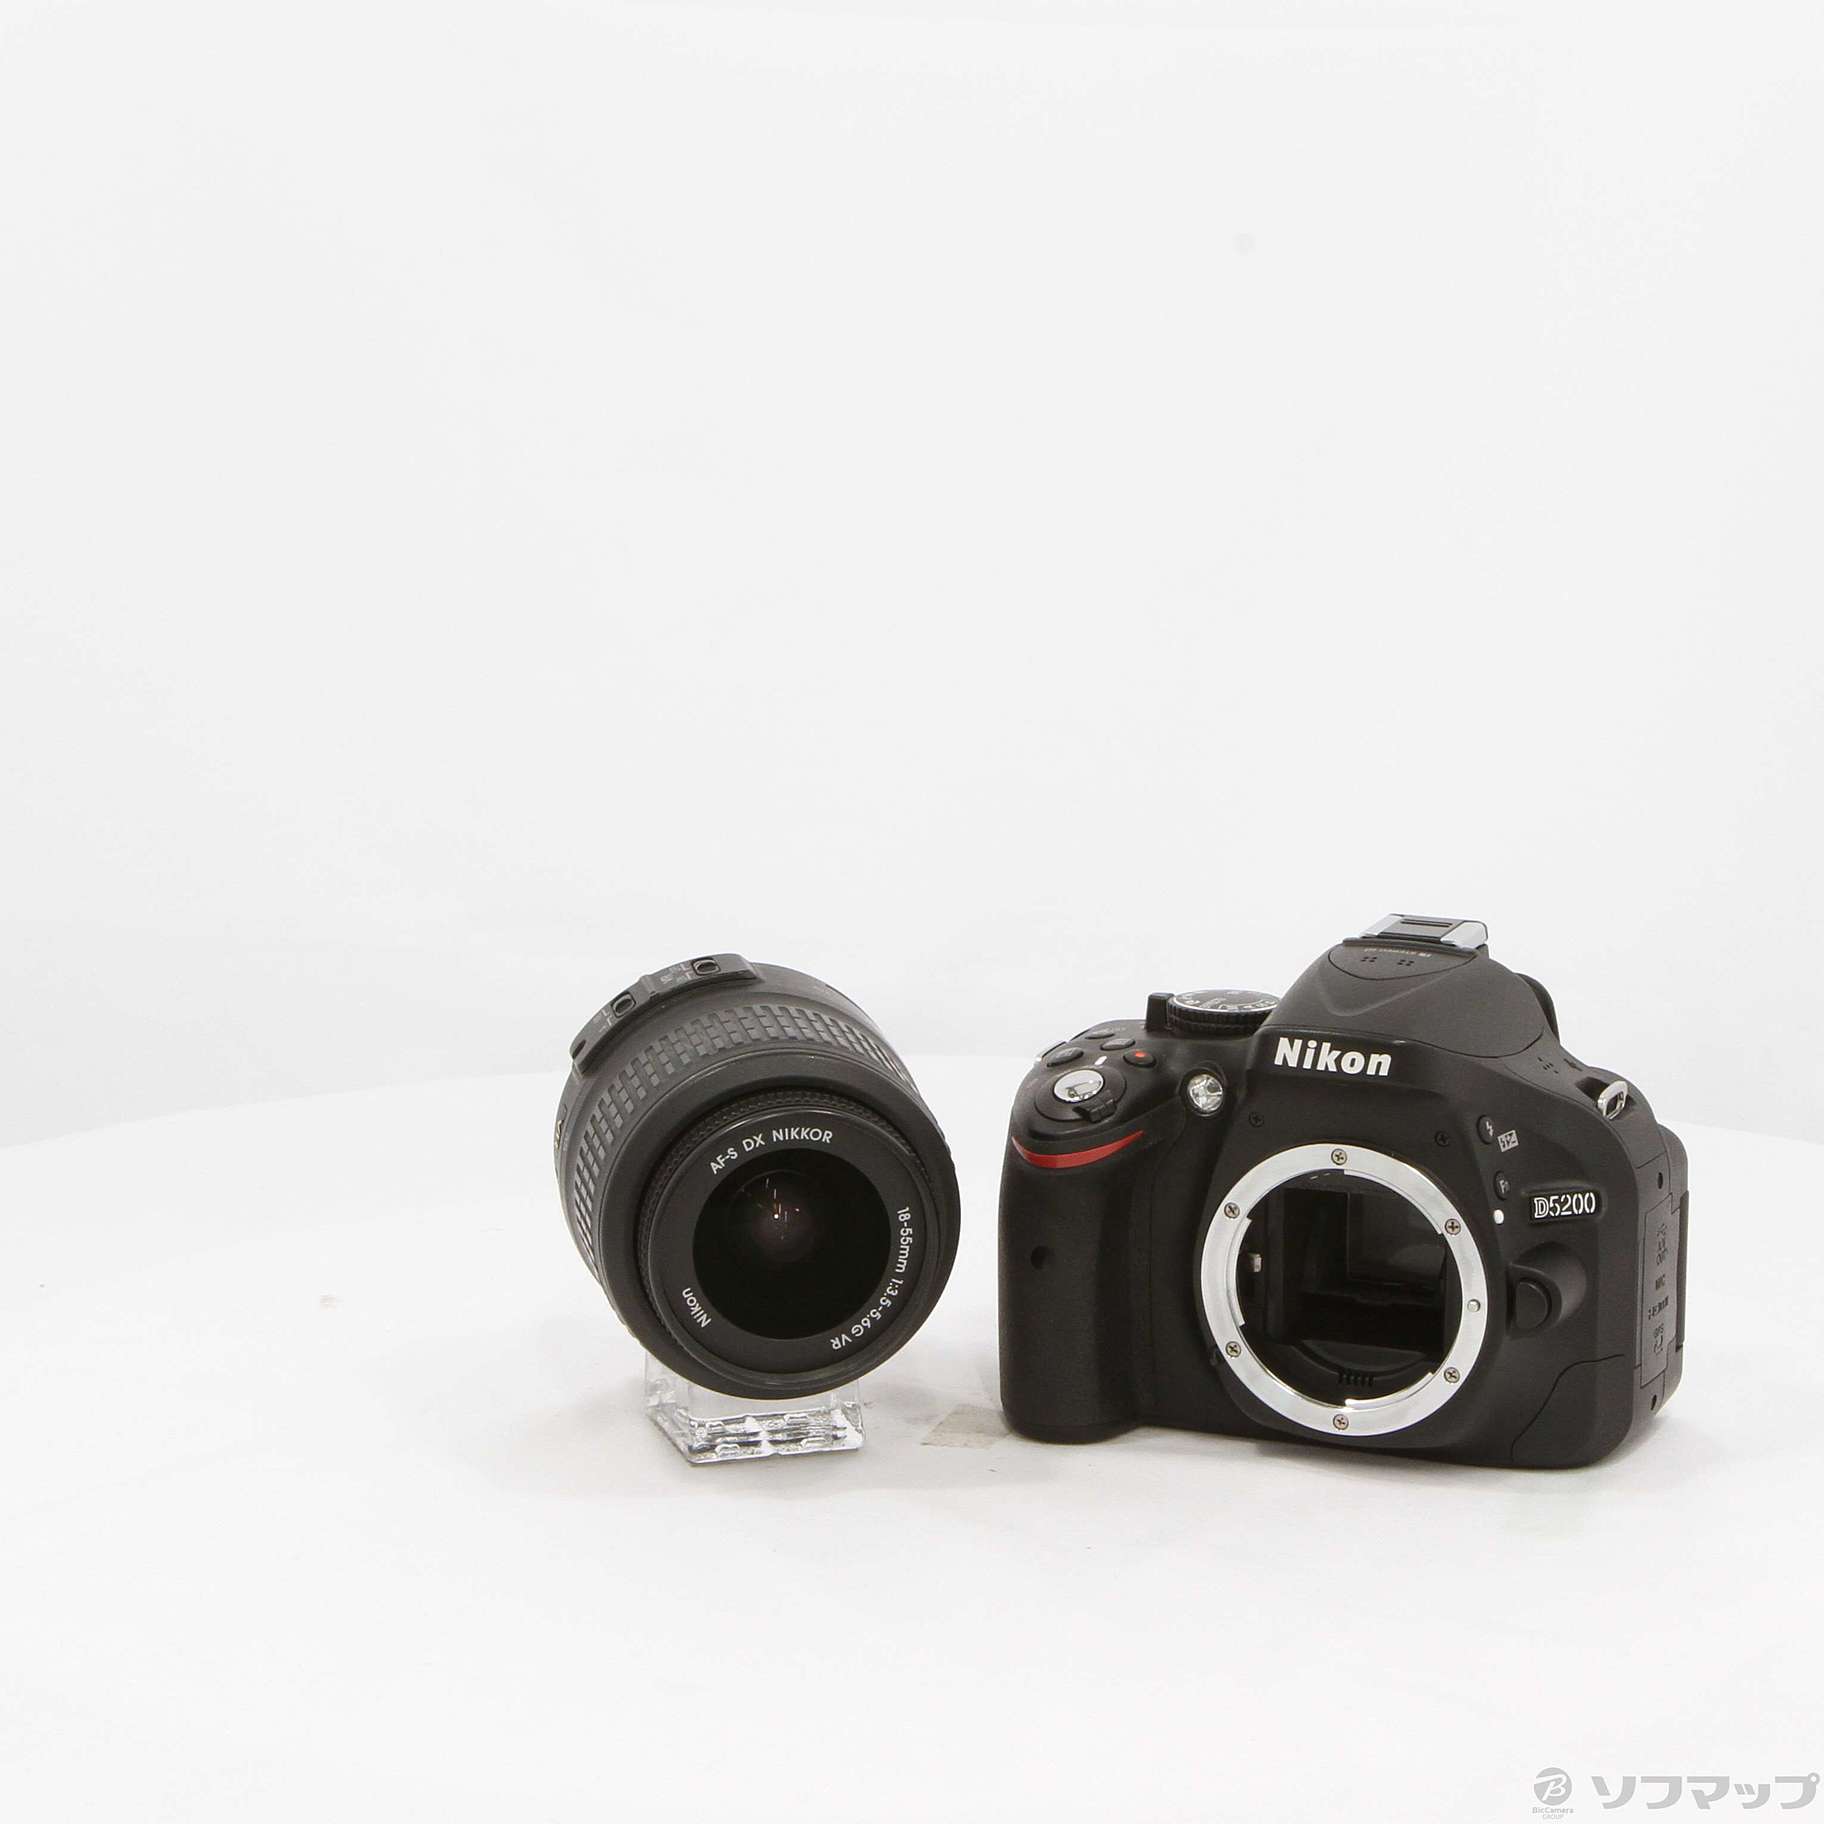 17550円 お買い得 Nikon D5200 18-55VR レンズキット BLACK